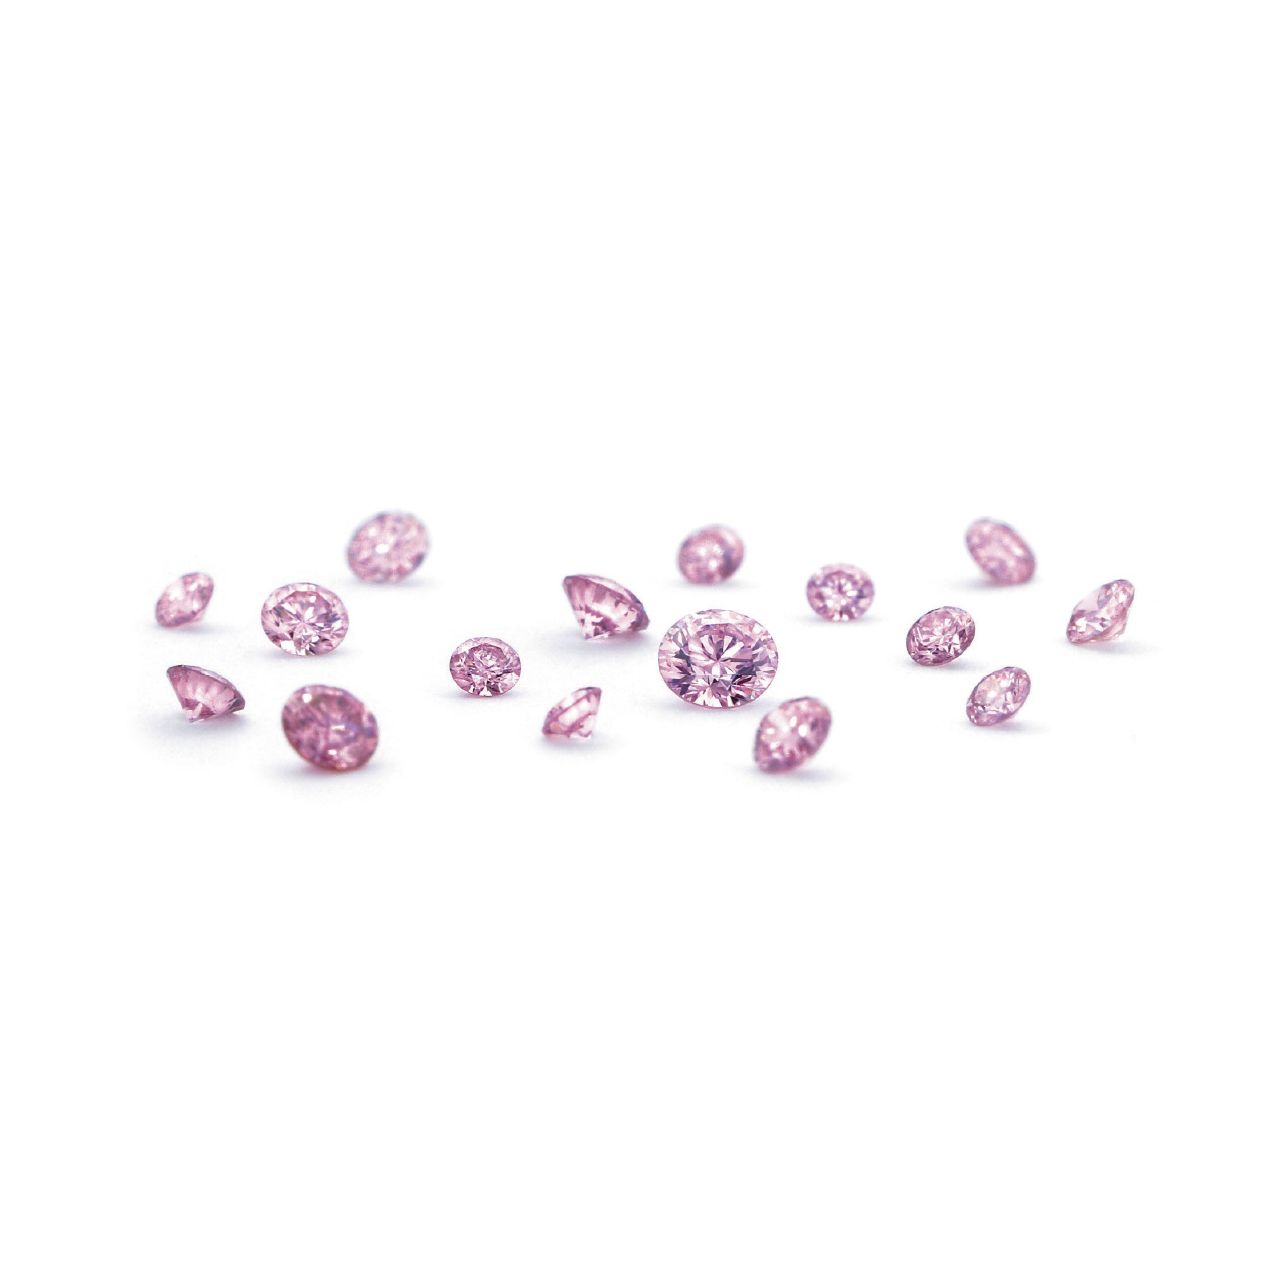 Recommend01:奇跡の宝石「天然ピンクダイヤモンド」